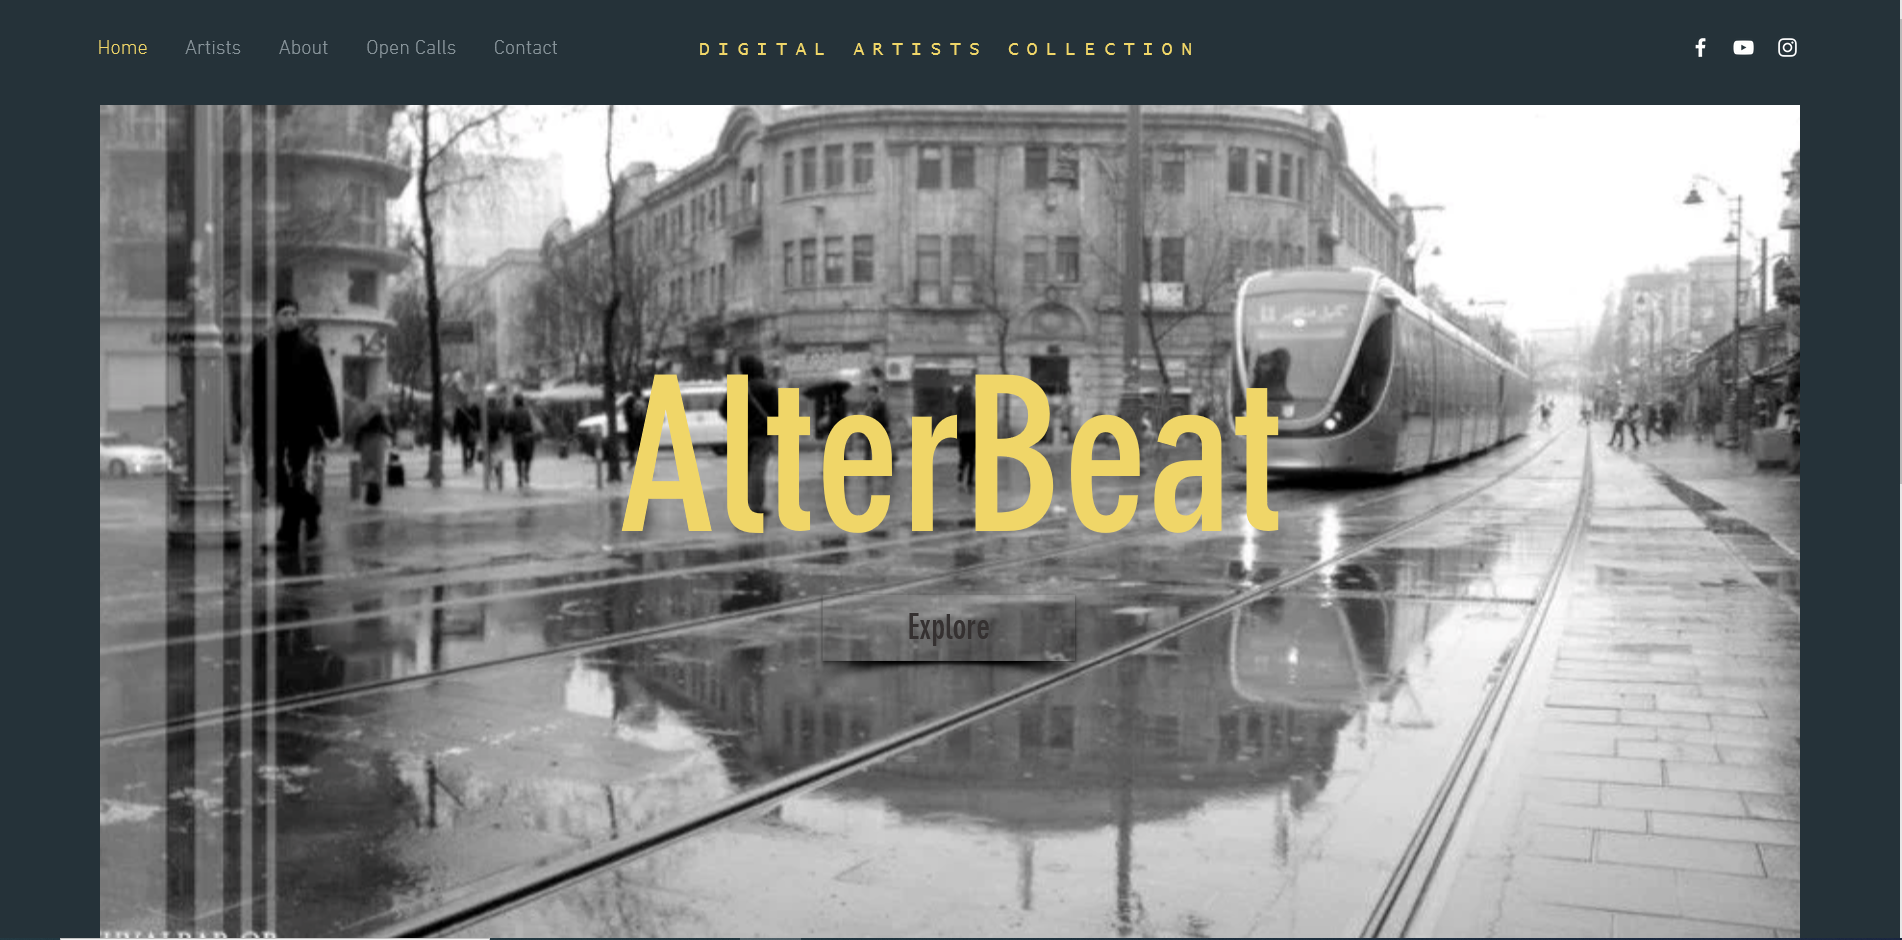 תוכן אתר לפלטפורמה לקידום אמנות "AlterBeat"